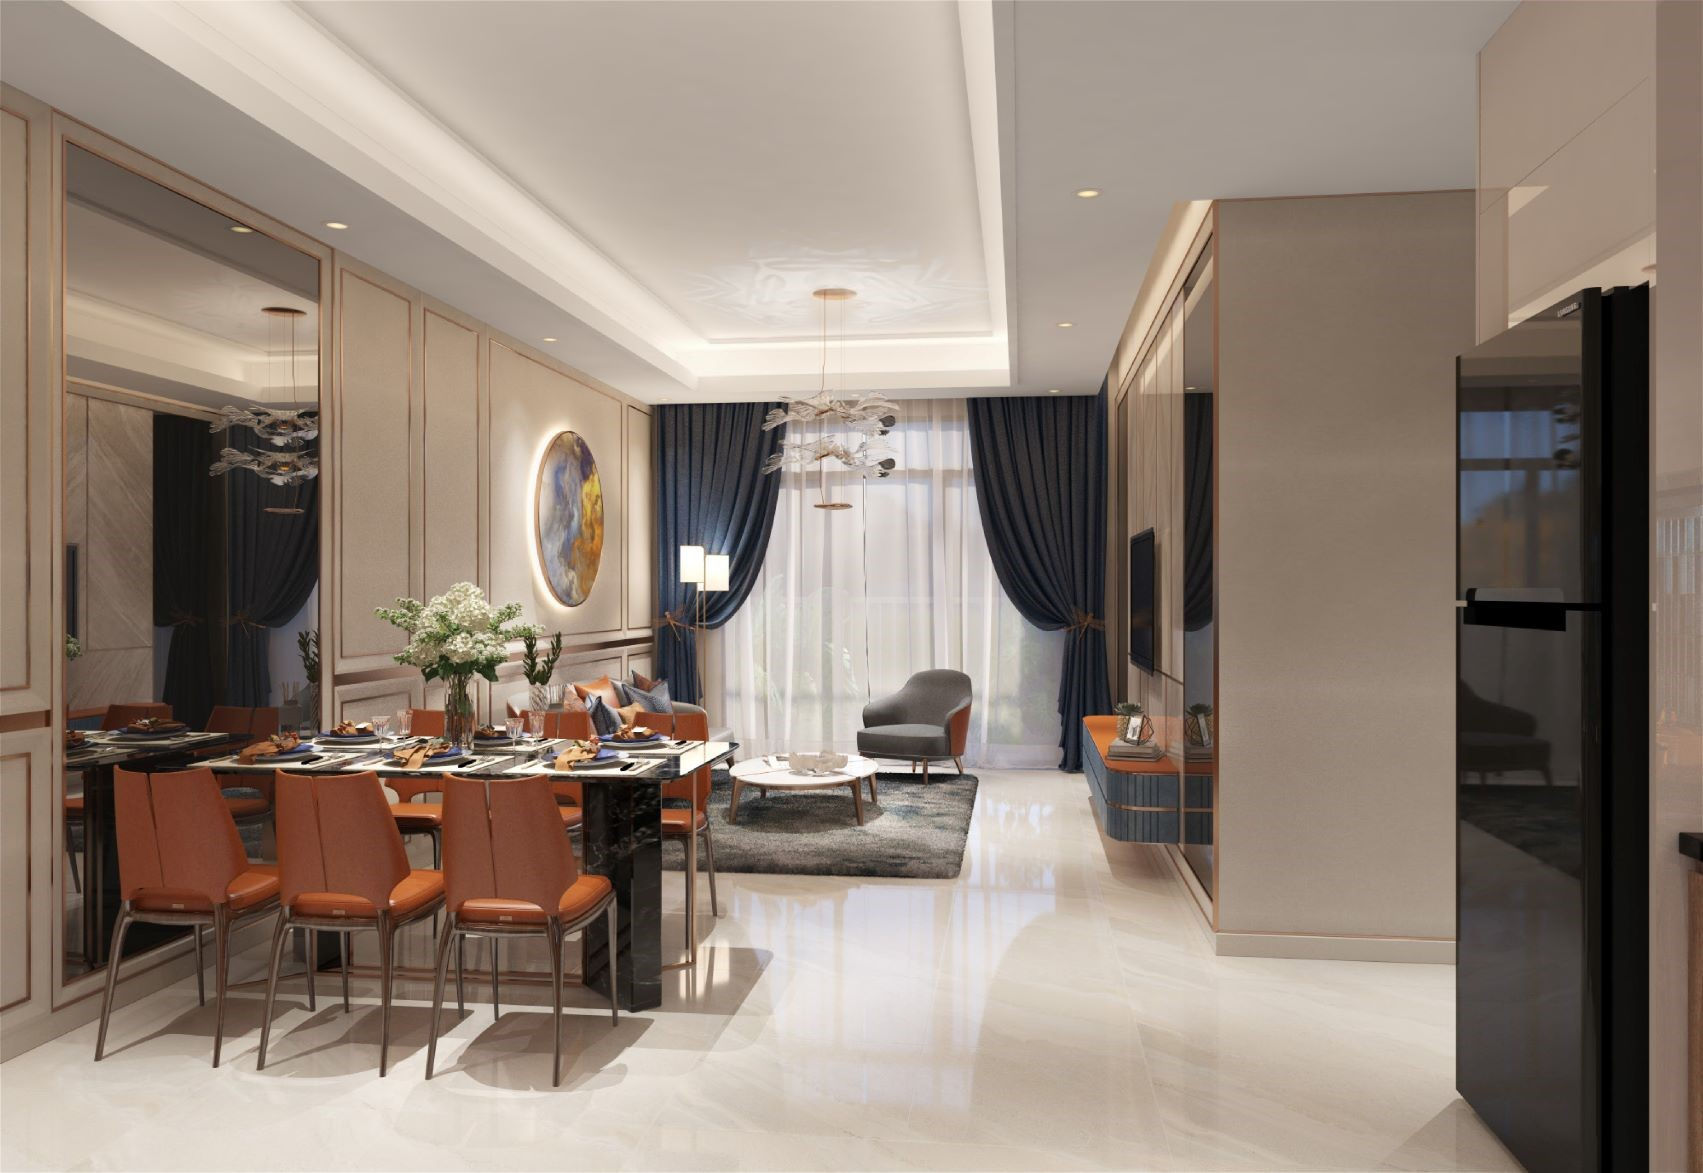 Thiết kế phòng khách sử dụng tông màu vàng hồng, cam đất và xanh đậm ấm áp và sang trọng.